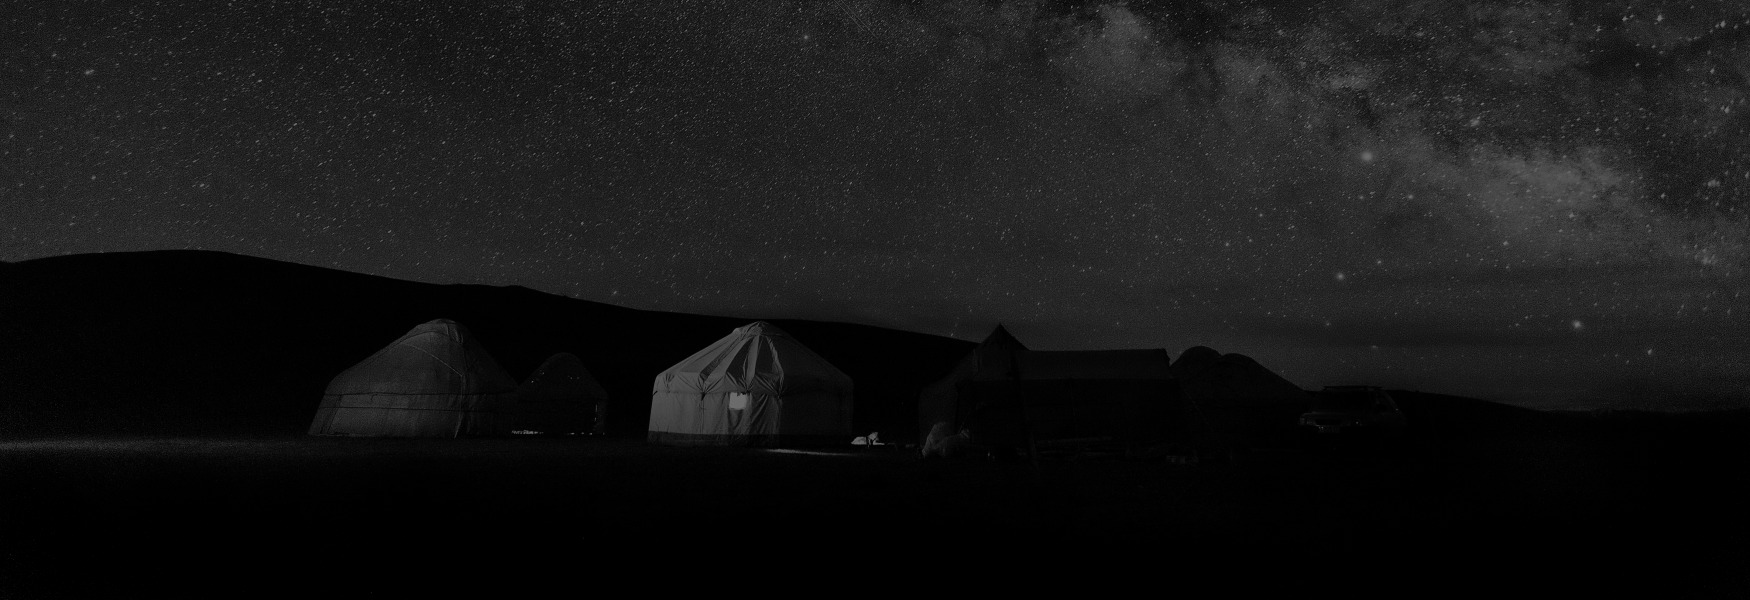 키르기스스탄 텐샨산맥 고지대에서 바라보는 밤하늘의 풍경